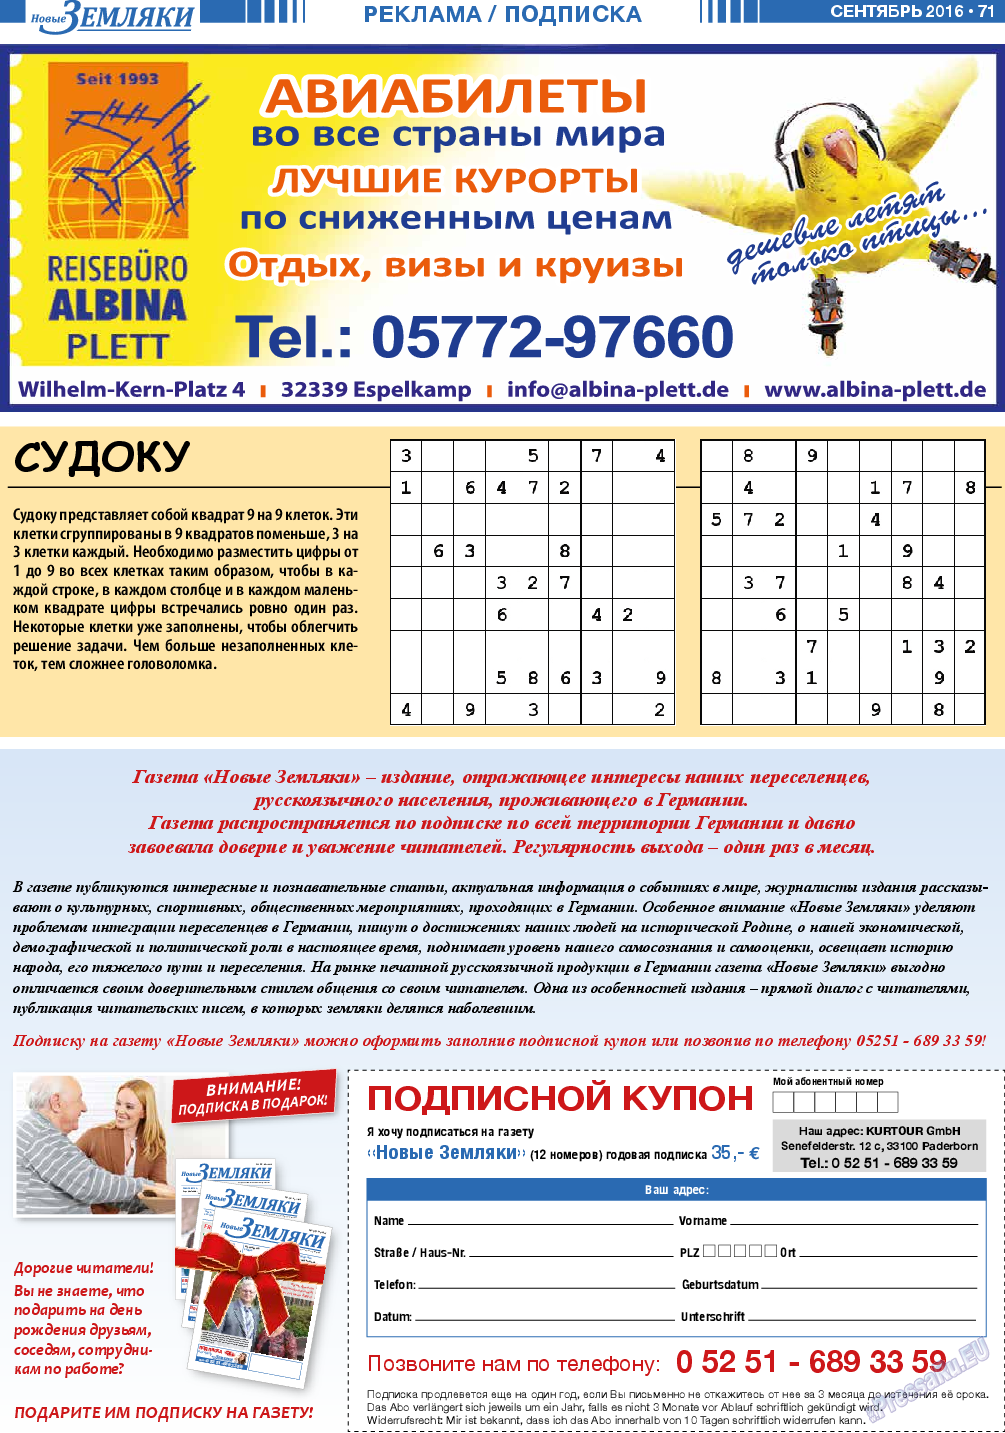 Новые Земляки (газета). 2016 год, номер 9, стр. 71